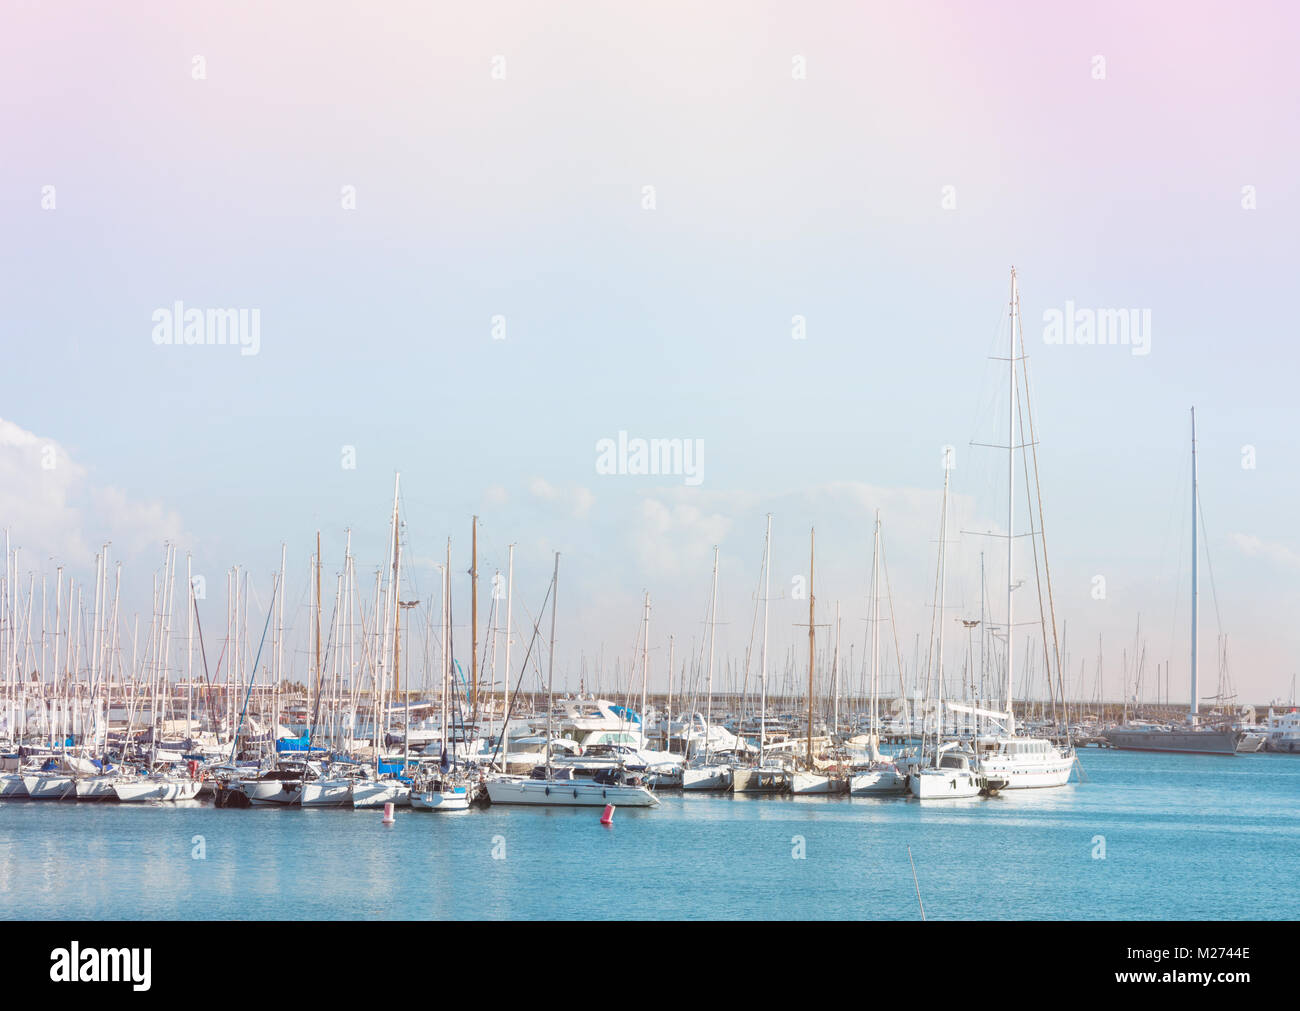 Panoramablick auf die wunderschöne Seenlandschaft mit luxuriösen Yachten im Hafen. Türkisblaues Wasser Pastellfarben blaue Himmel Breezy luftige Atmosphäre. Urban Lifestyle Phot Stockfoto